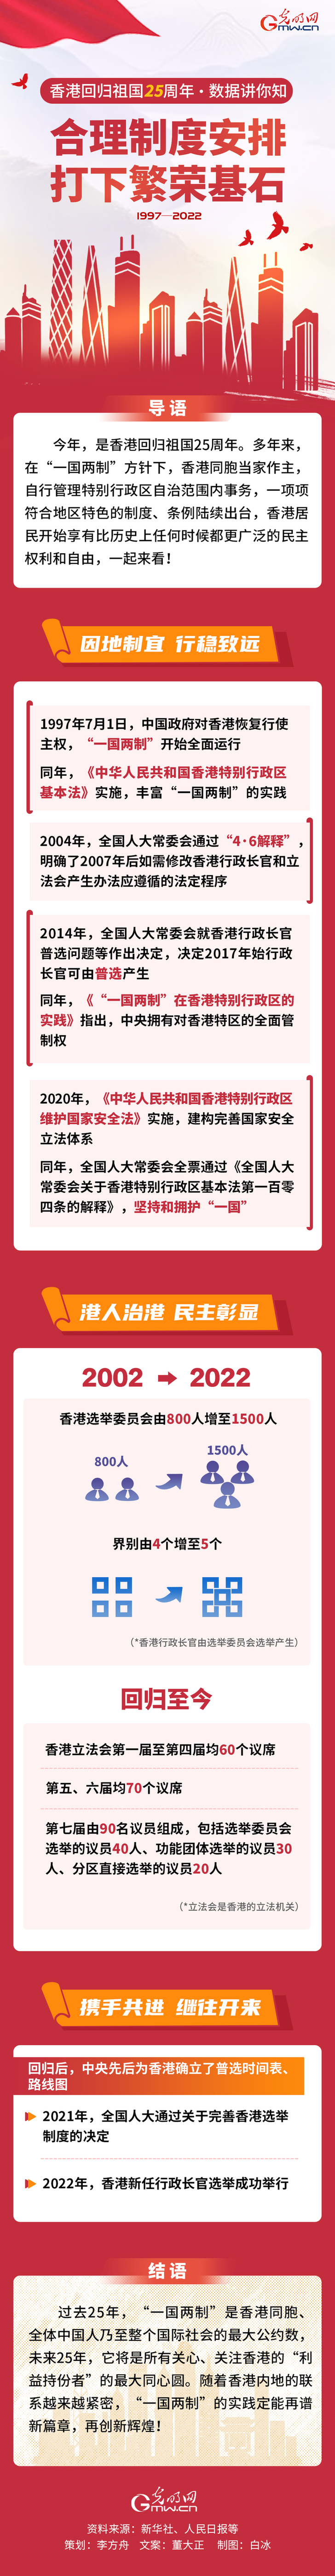 【香港回归祖国25周年·数据讲你知】合理准则组织 打下昌盛柱石